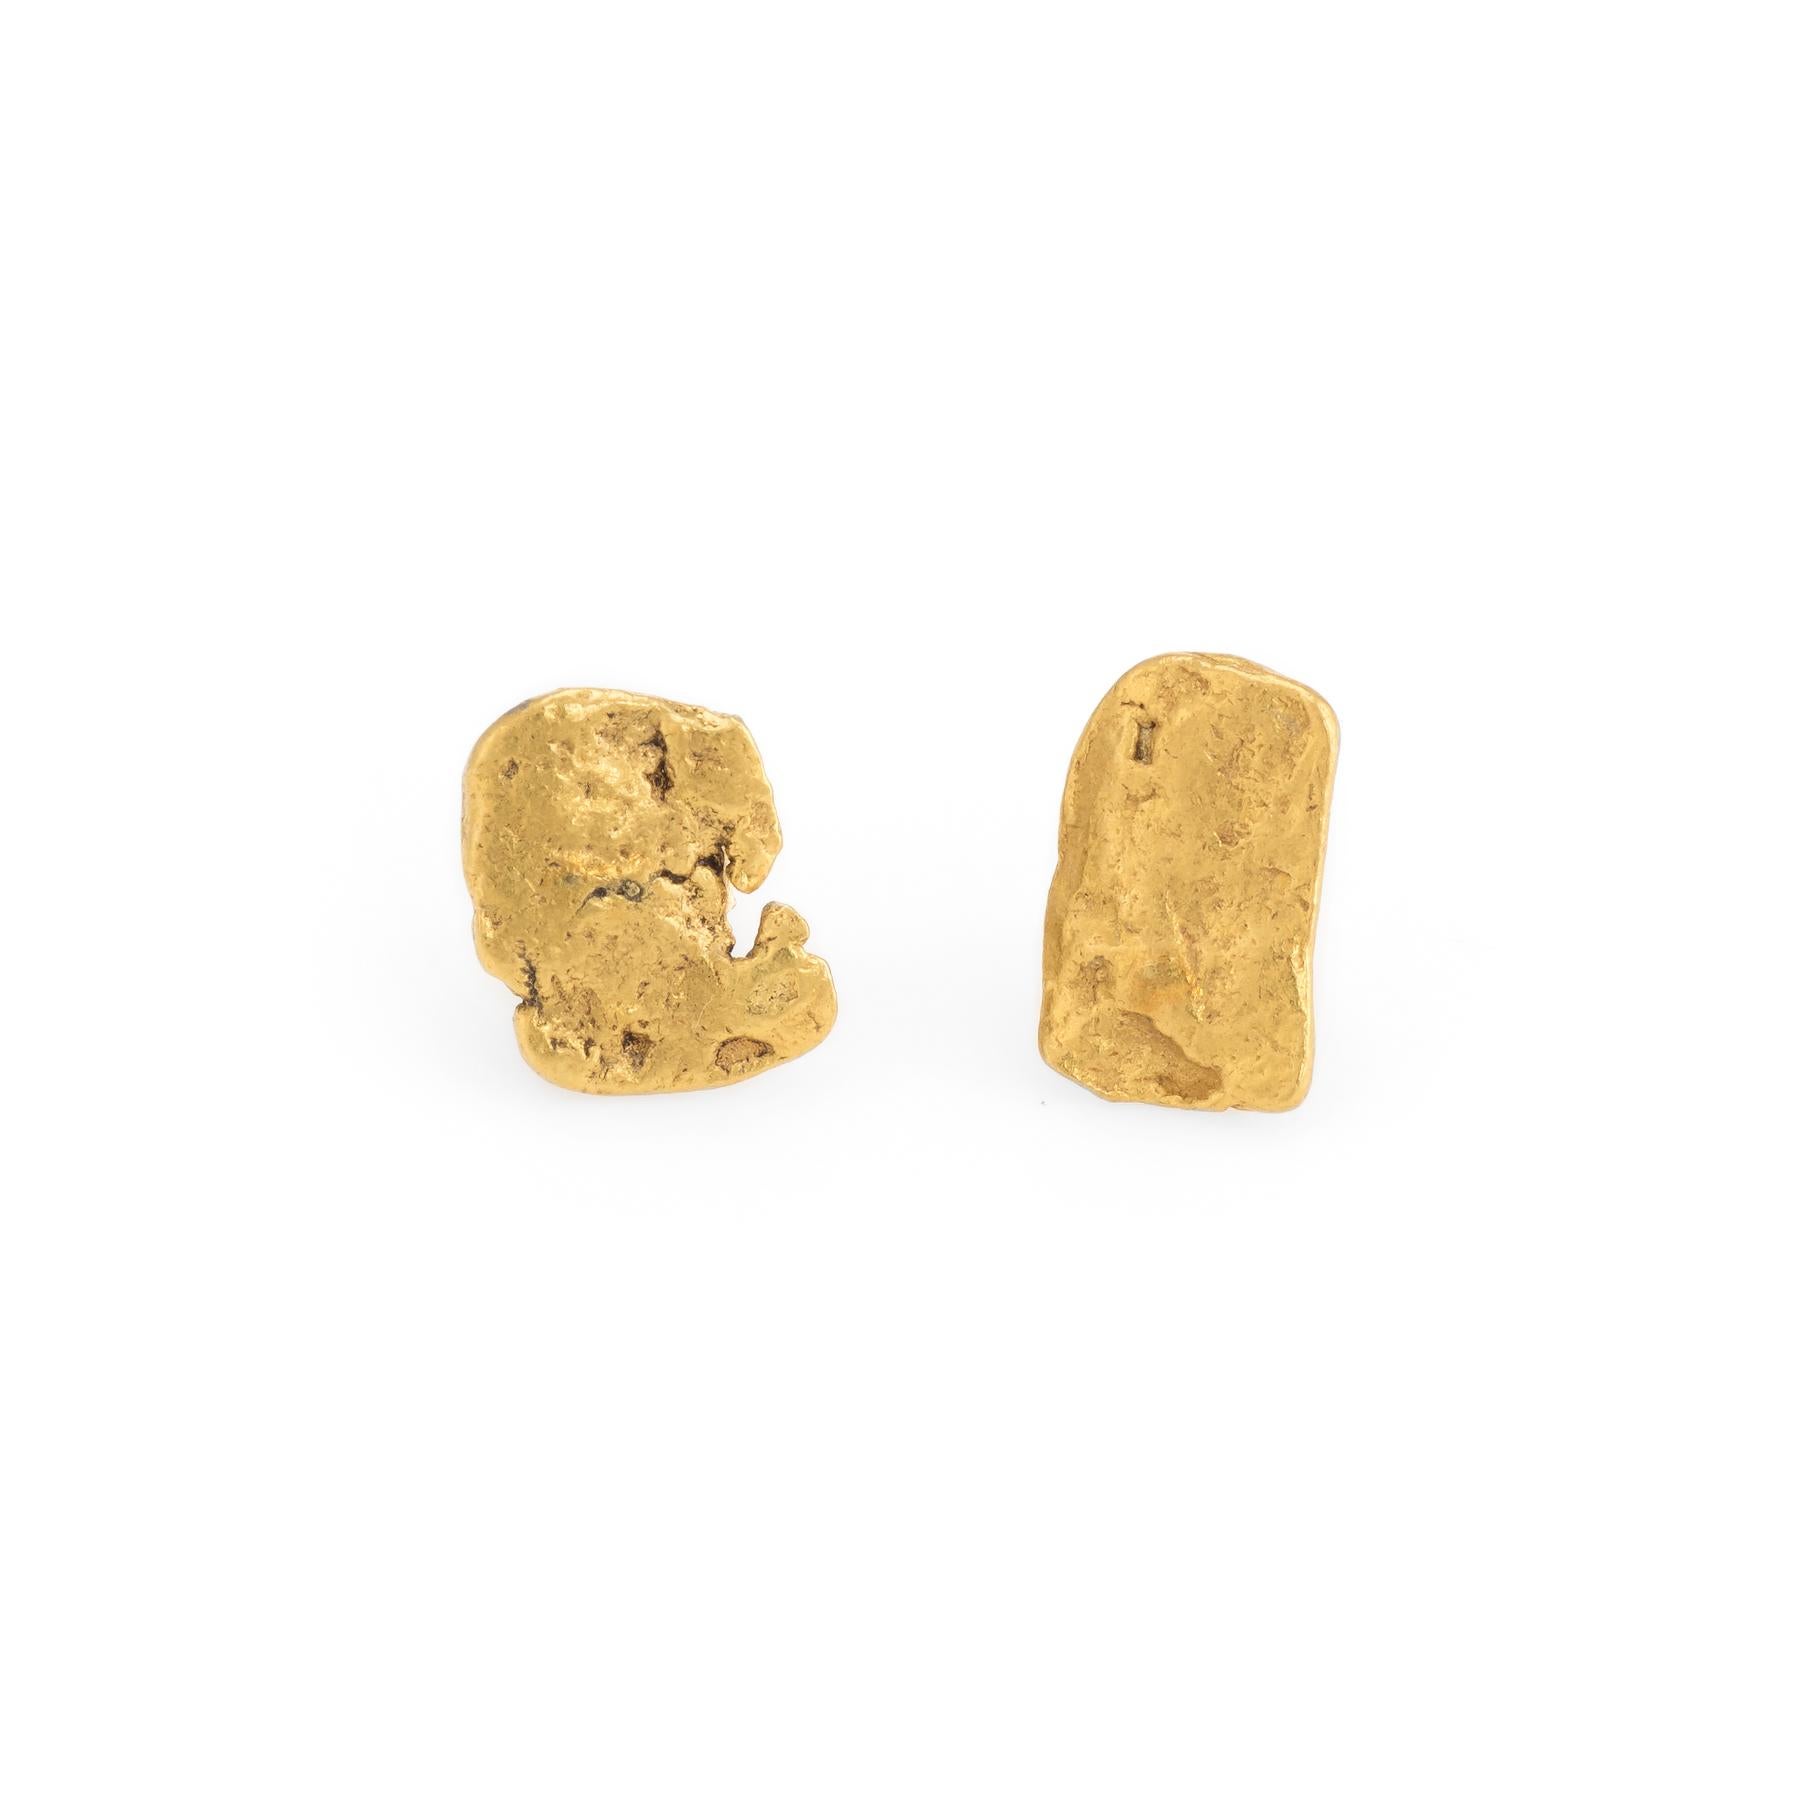 24 karat gold nugget earrings